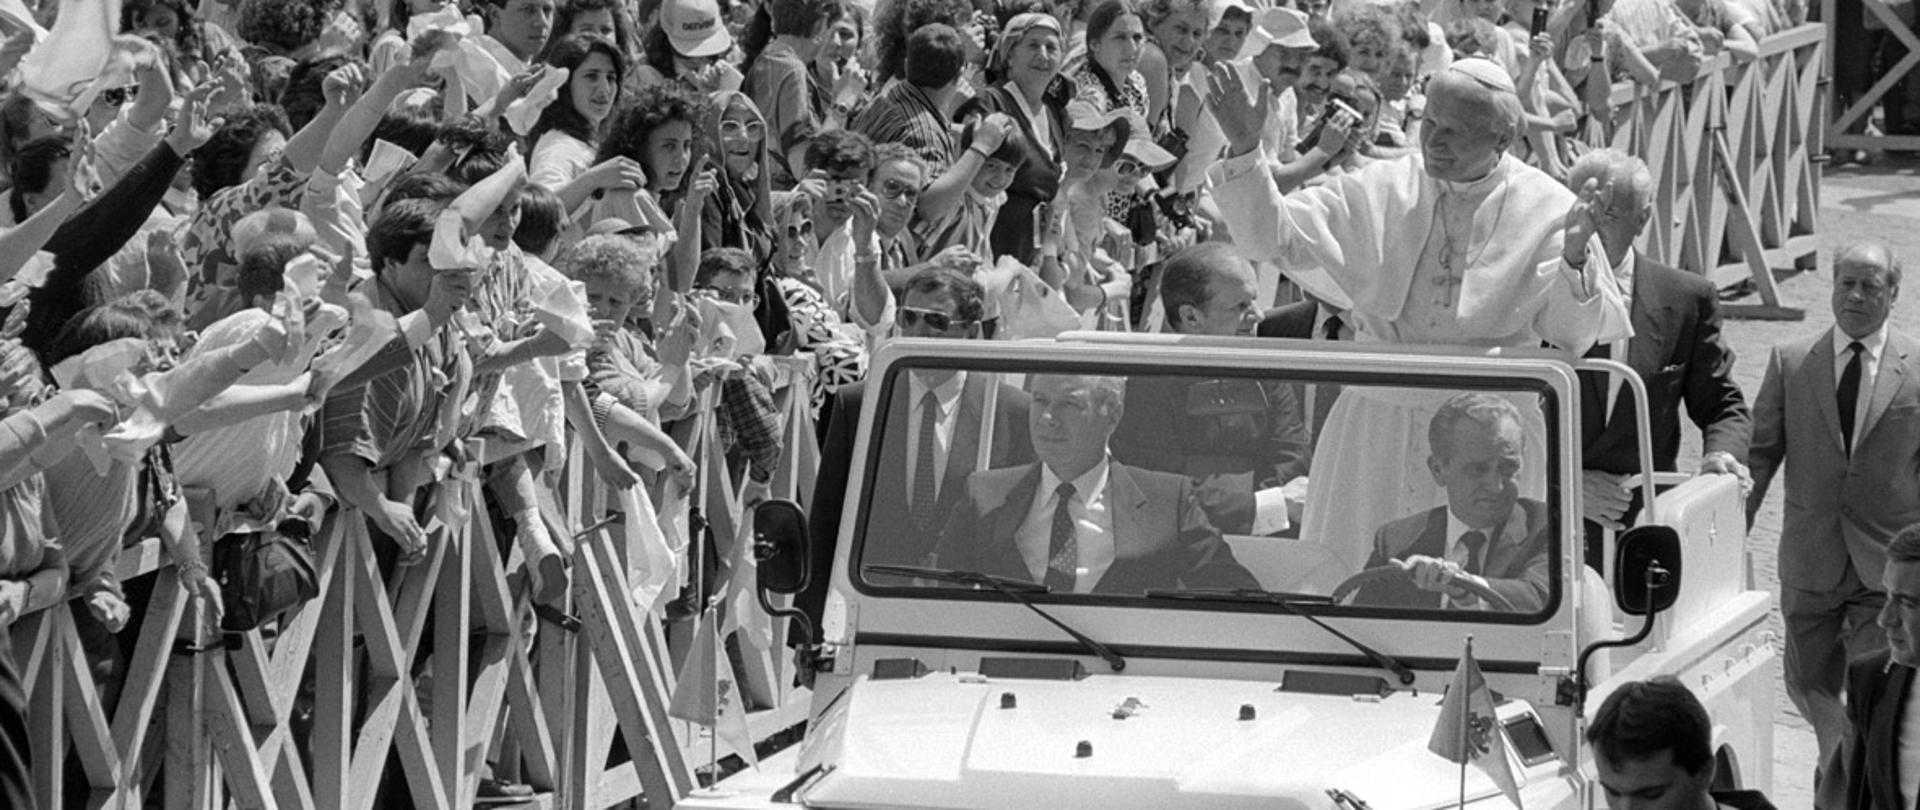 28.06.1989 Piazza San Pietro. Udienza generale del Papa Giovanni Paolo II. Il Santo Padre saluta i fedeli. 